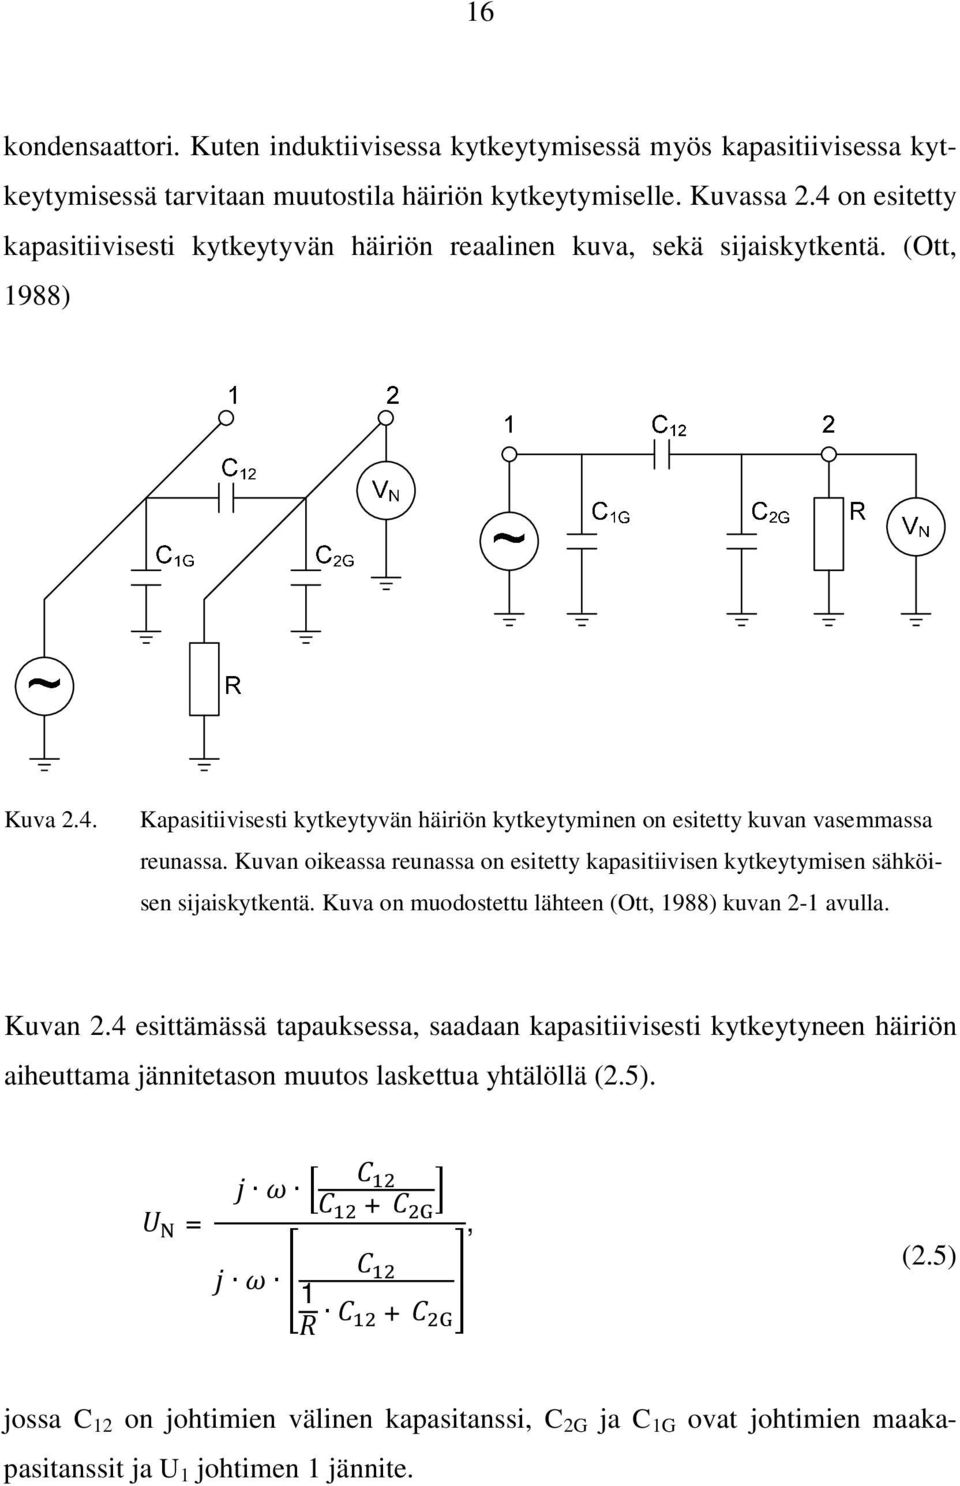 Kuvan oikeassa reunassa on esitetty kapasitiivisen kytkeytymisen sähköisen sijaiskytkentä. Kuva on muodostettu lähteen (Ott, 1988) kuvan 2-1 avulla. Kuvan 2.